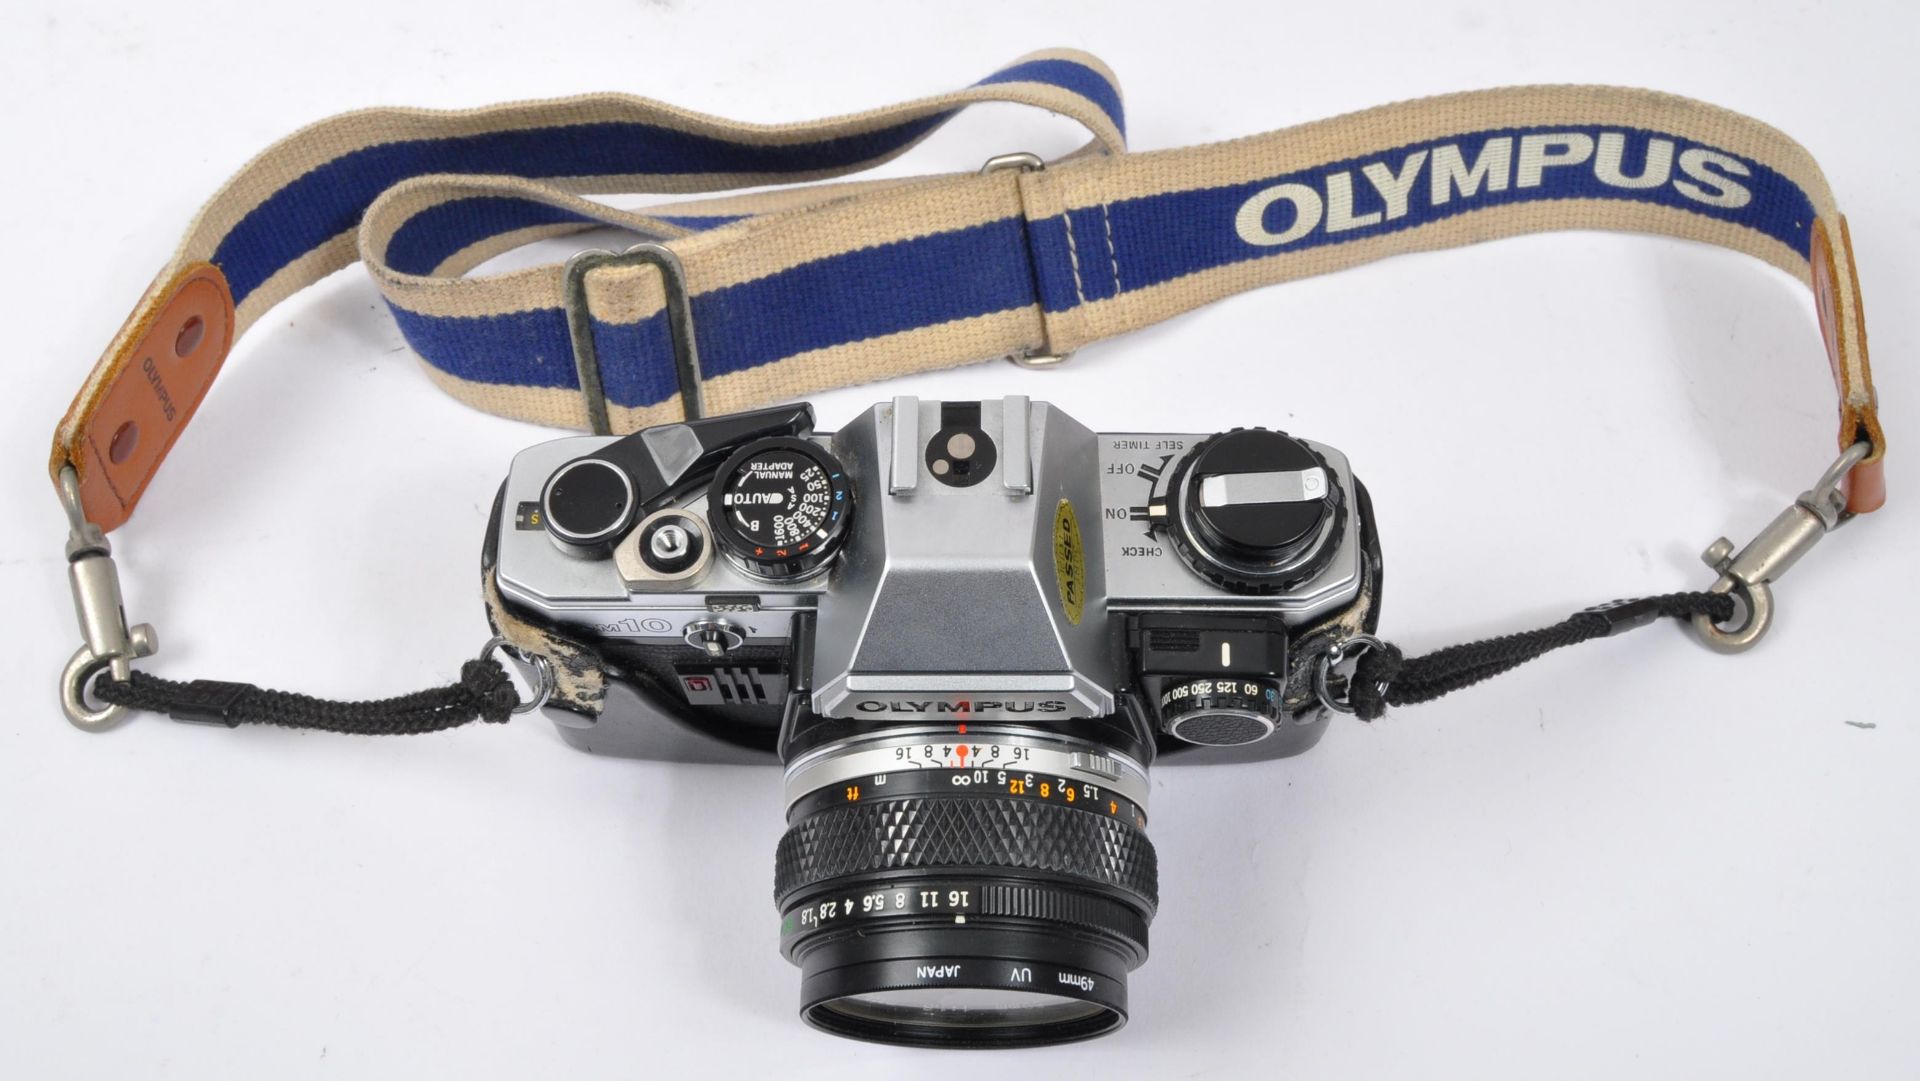 OLYMPUS OM10 - JAPANESE PHOTO CAMERA W/ LENSES - Image 3 of 6